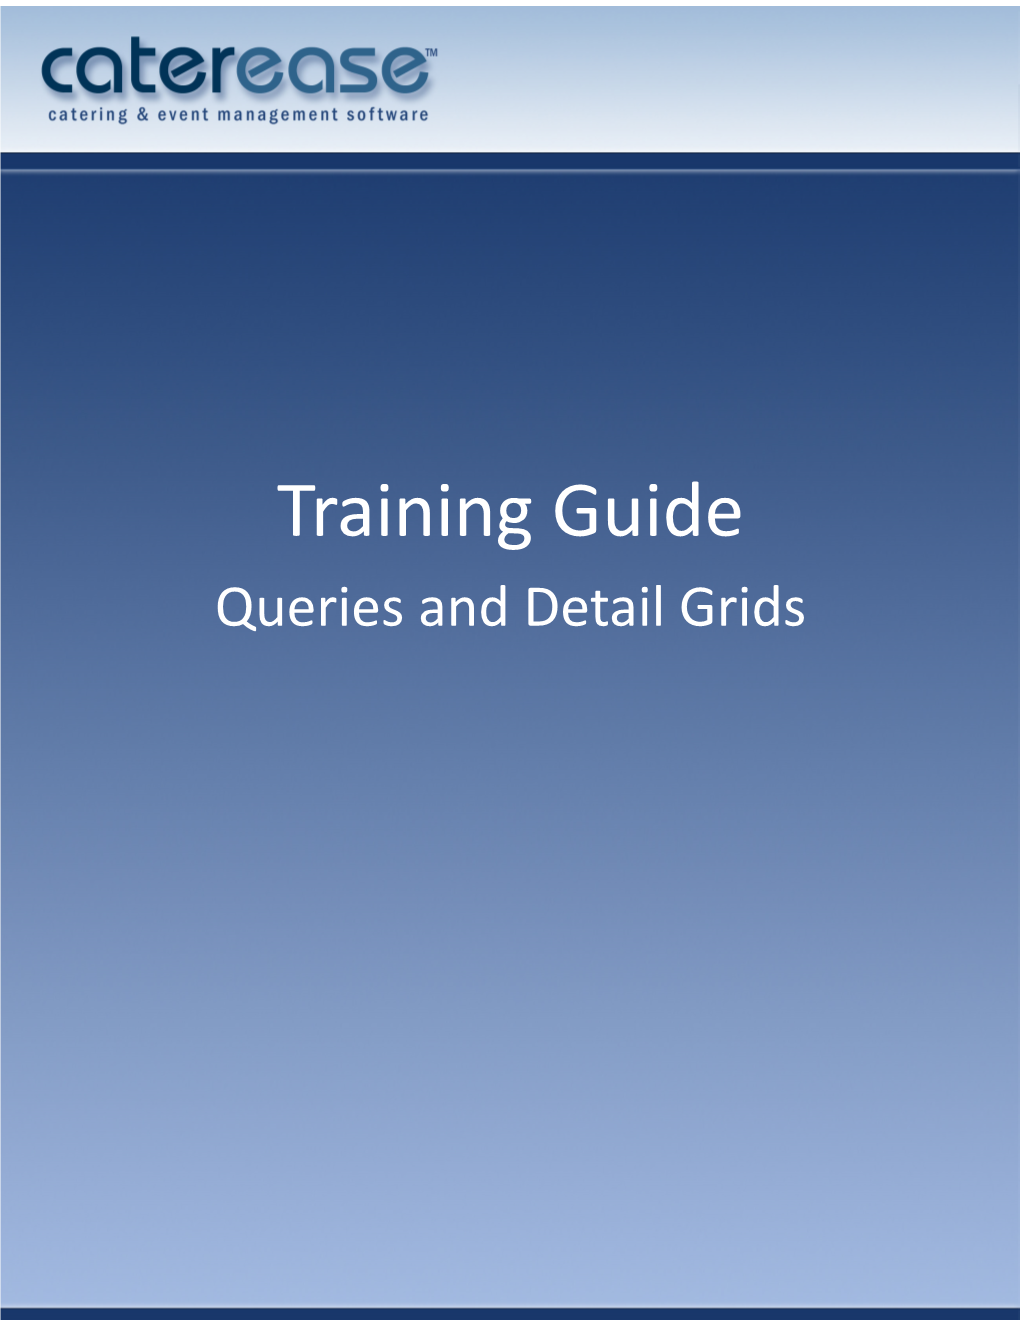 Queries and Detail Grids Queries and Detail Grids